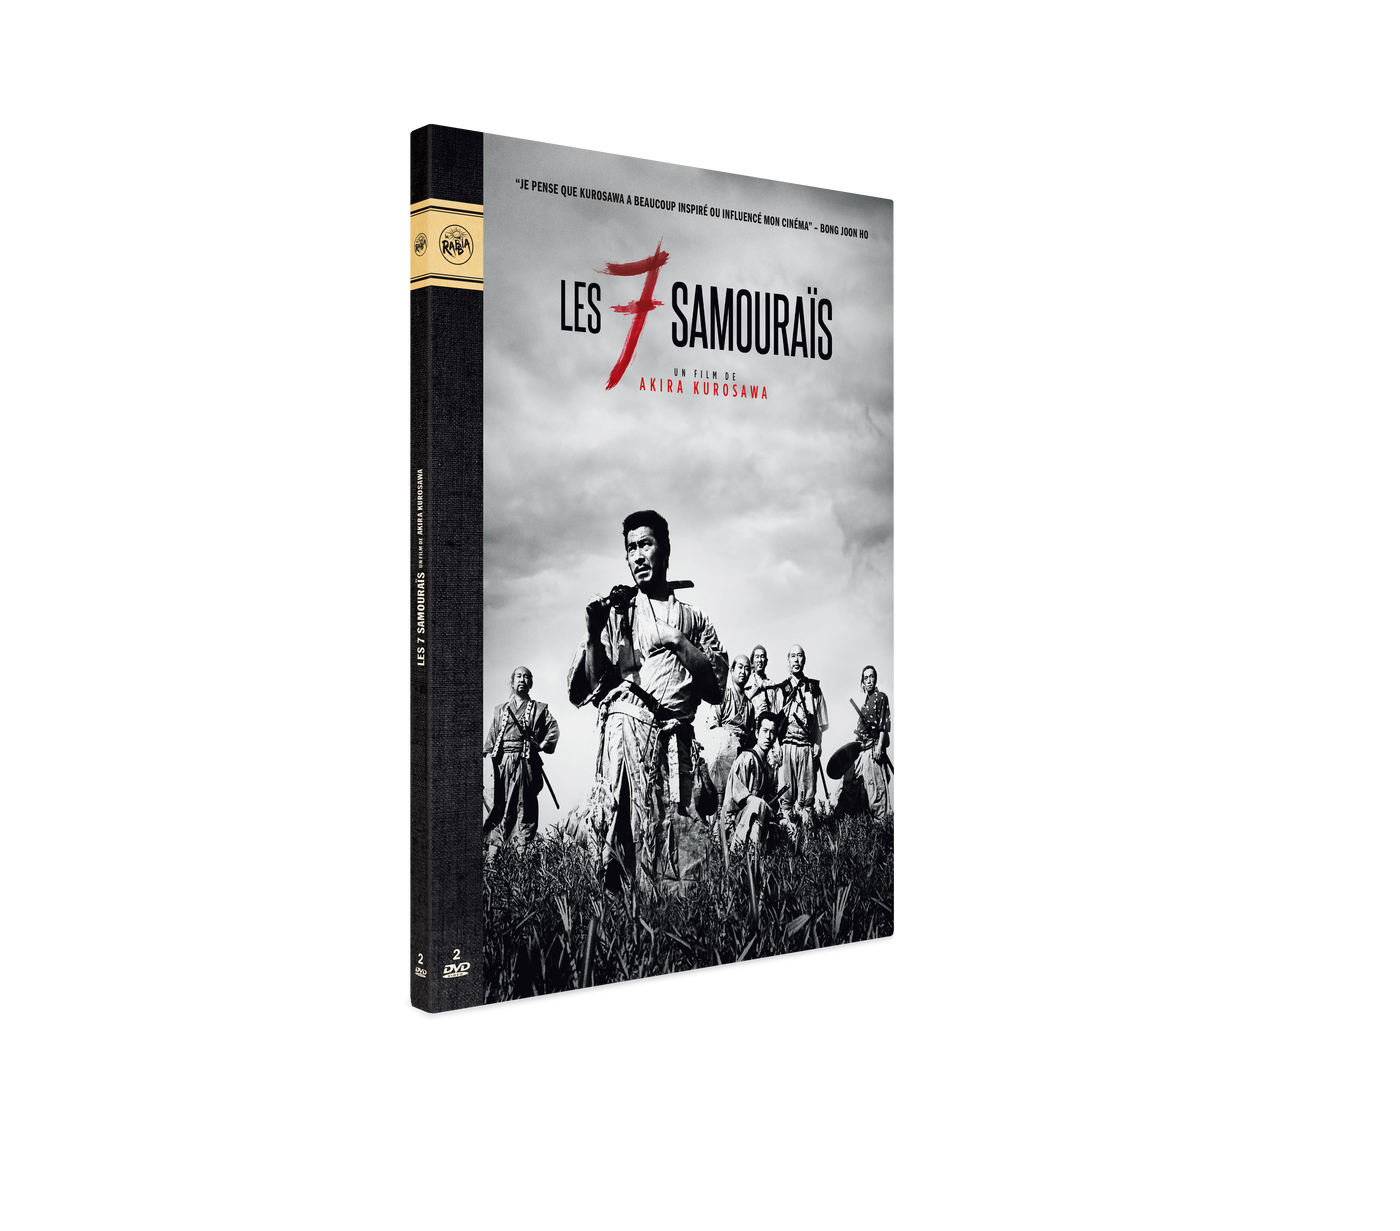 DVD Digipack "Les Sept Samouraïs"